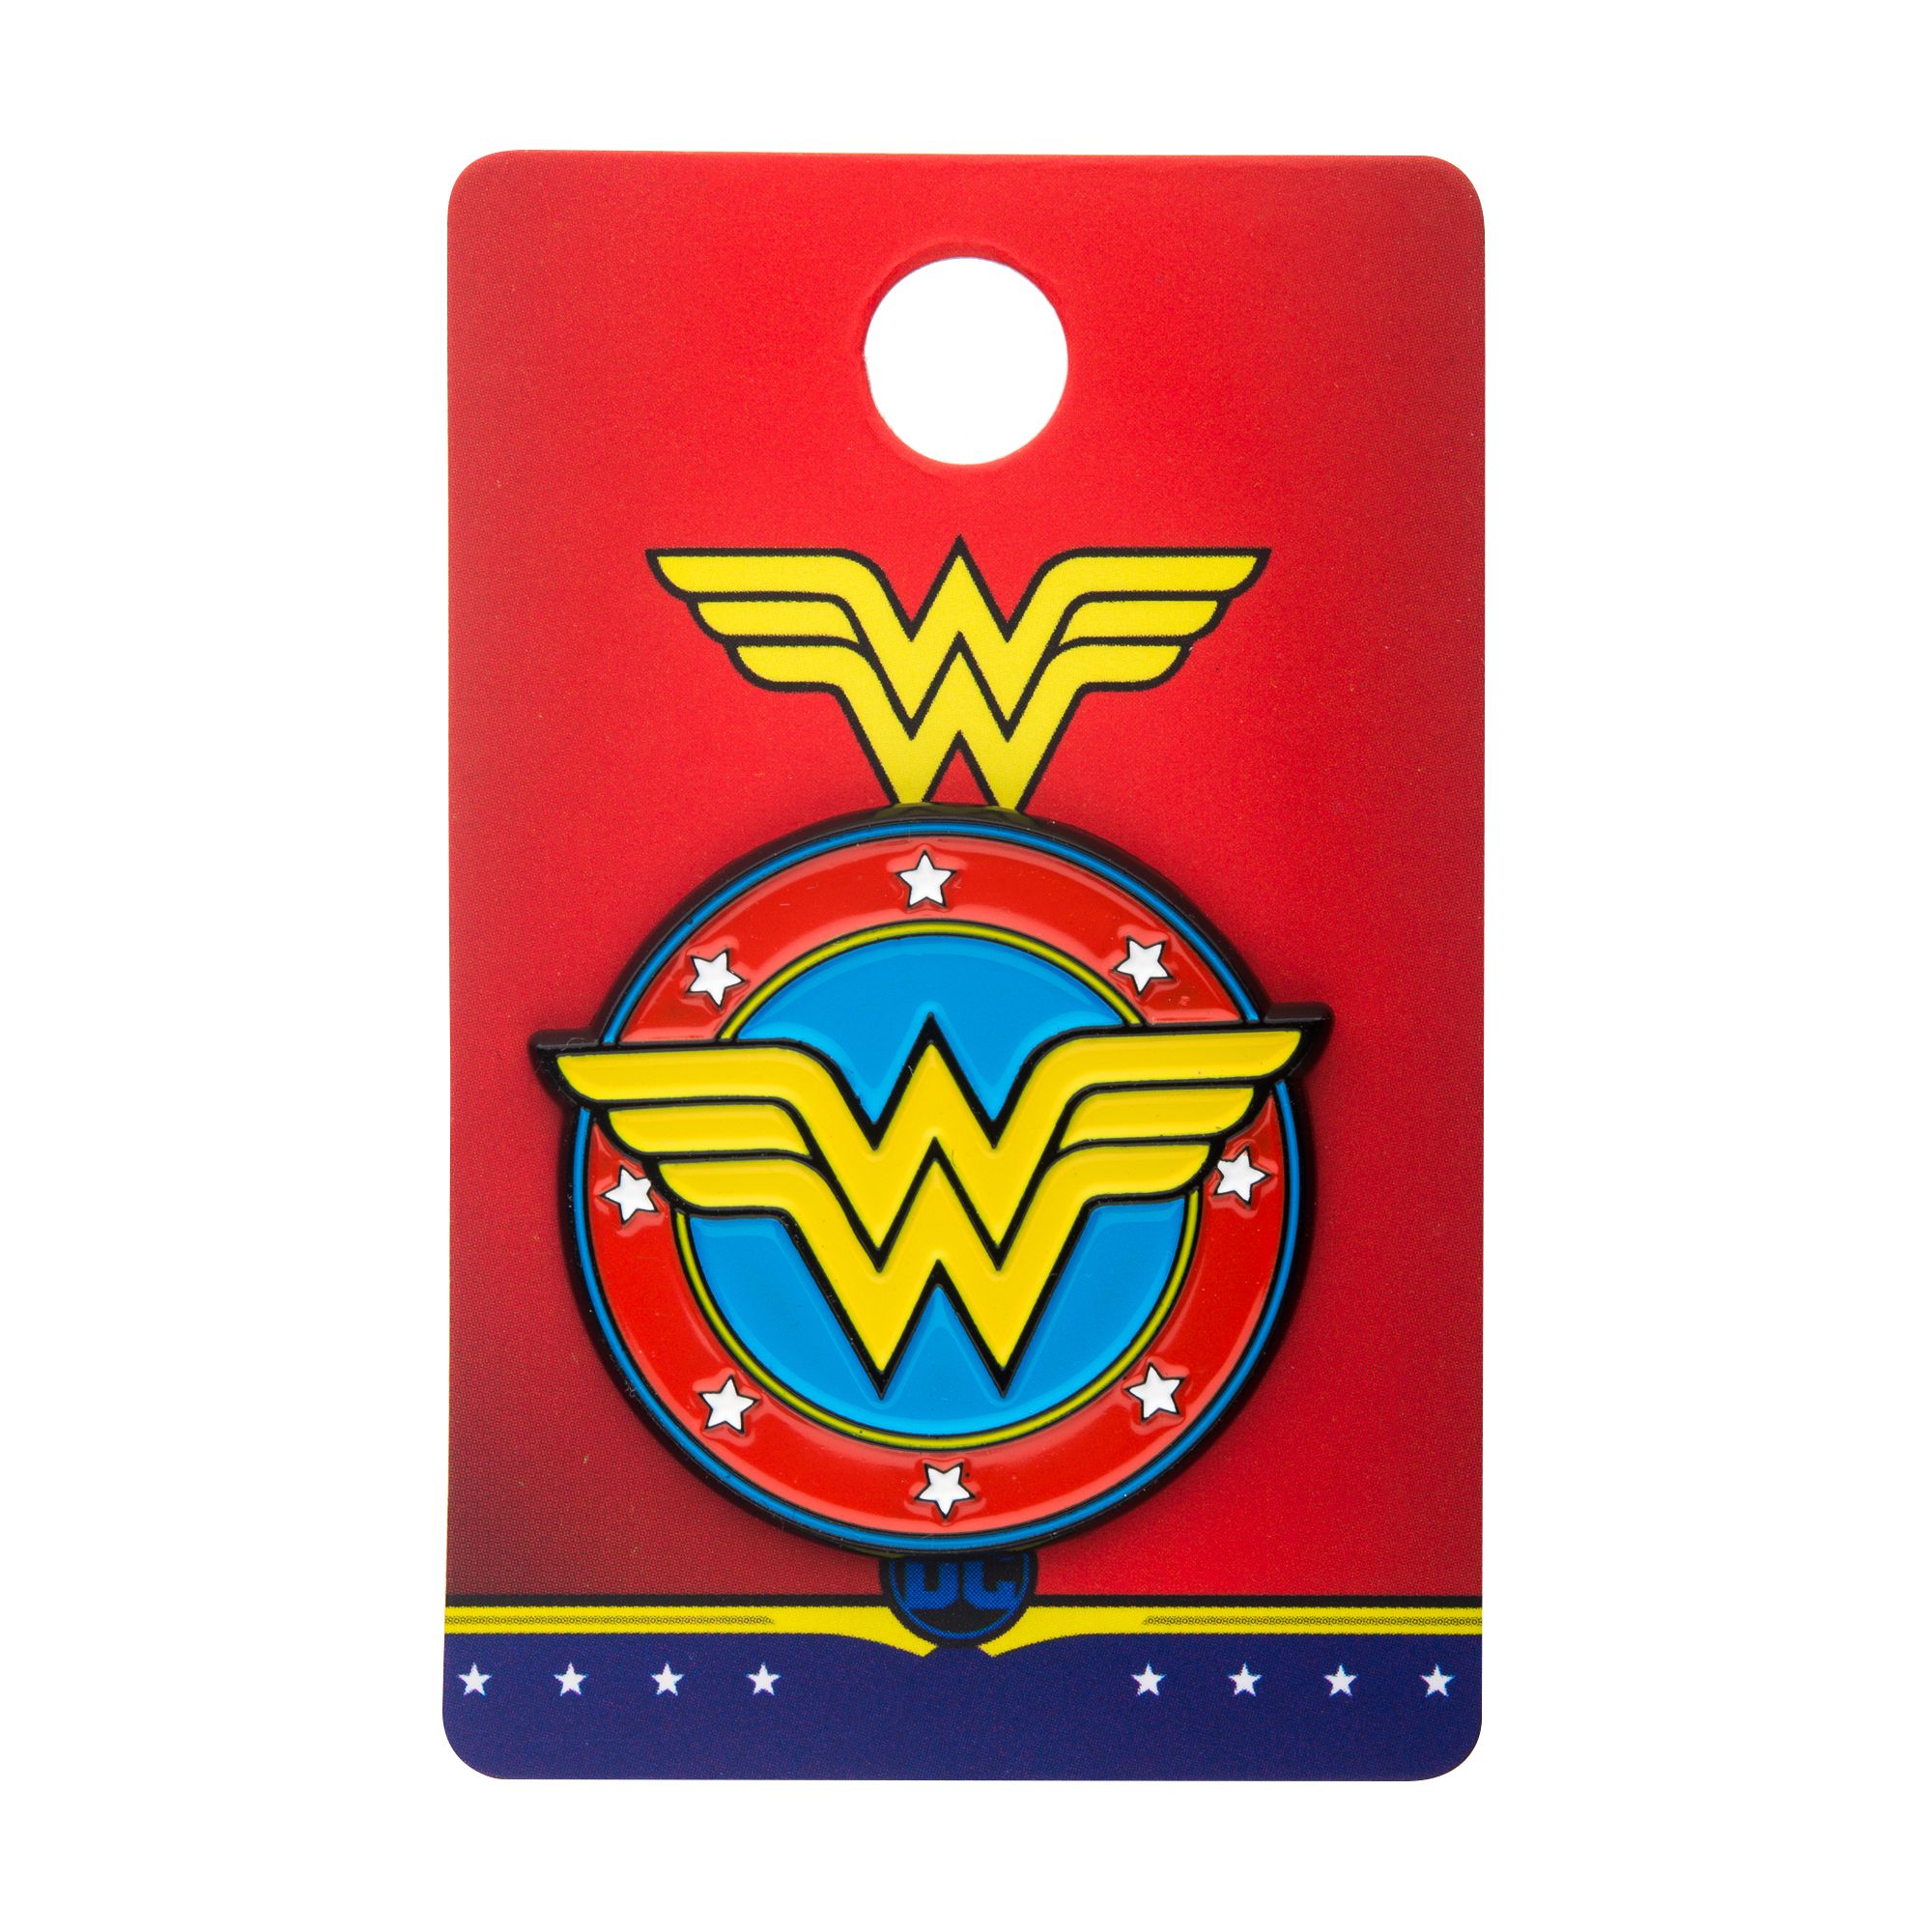 DC COMICS Dc Comics Wonder Woman Logo Lapel Pin -Rebel Bod-RebelBod